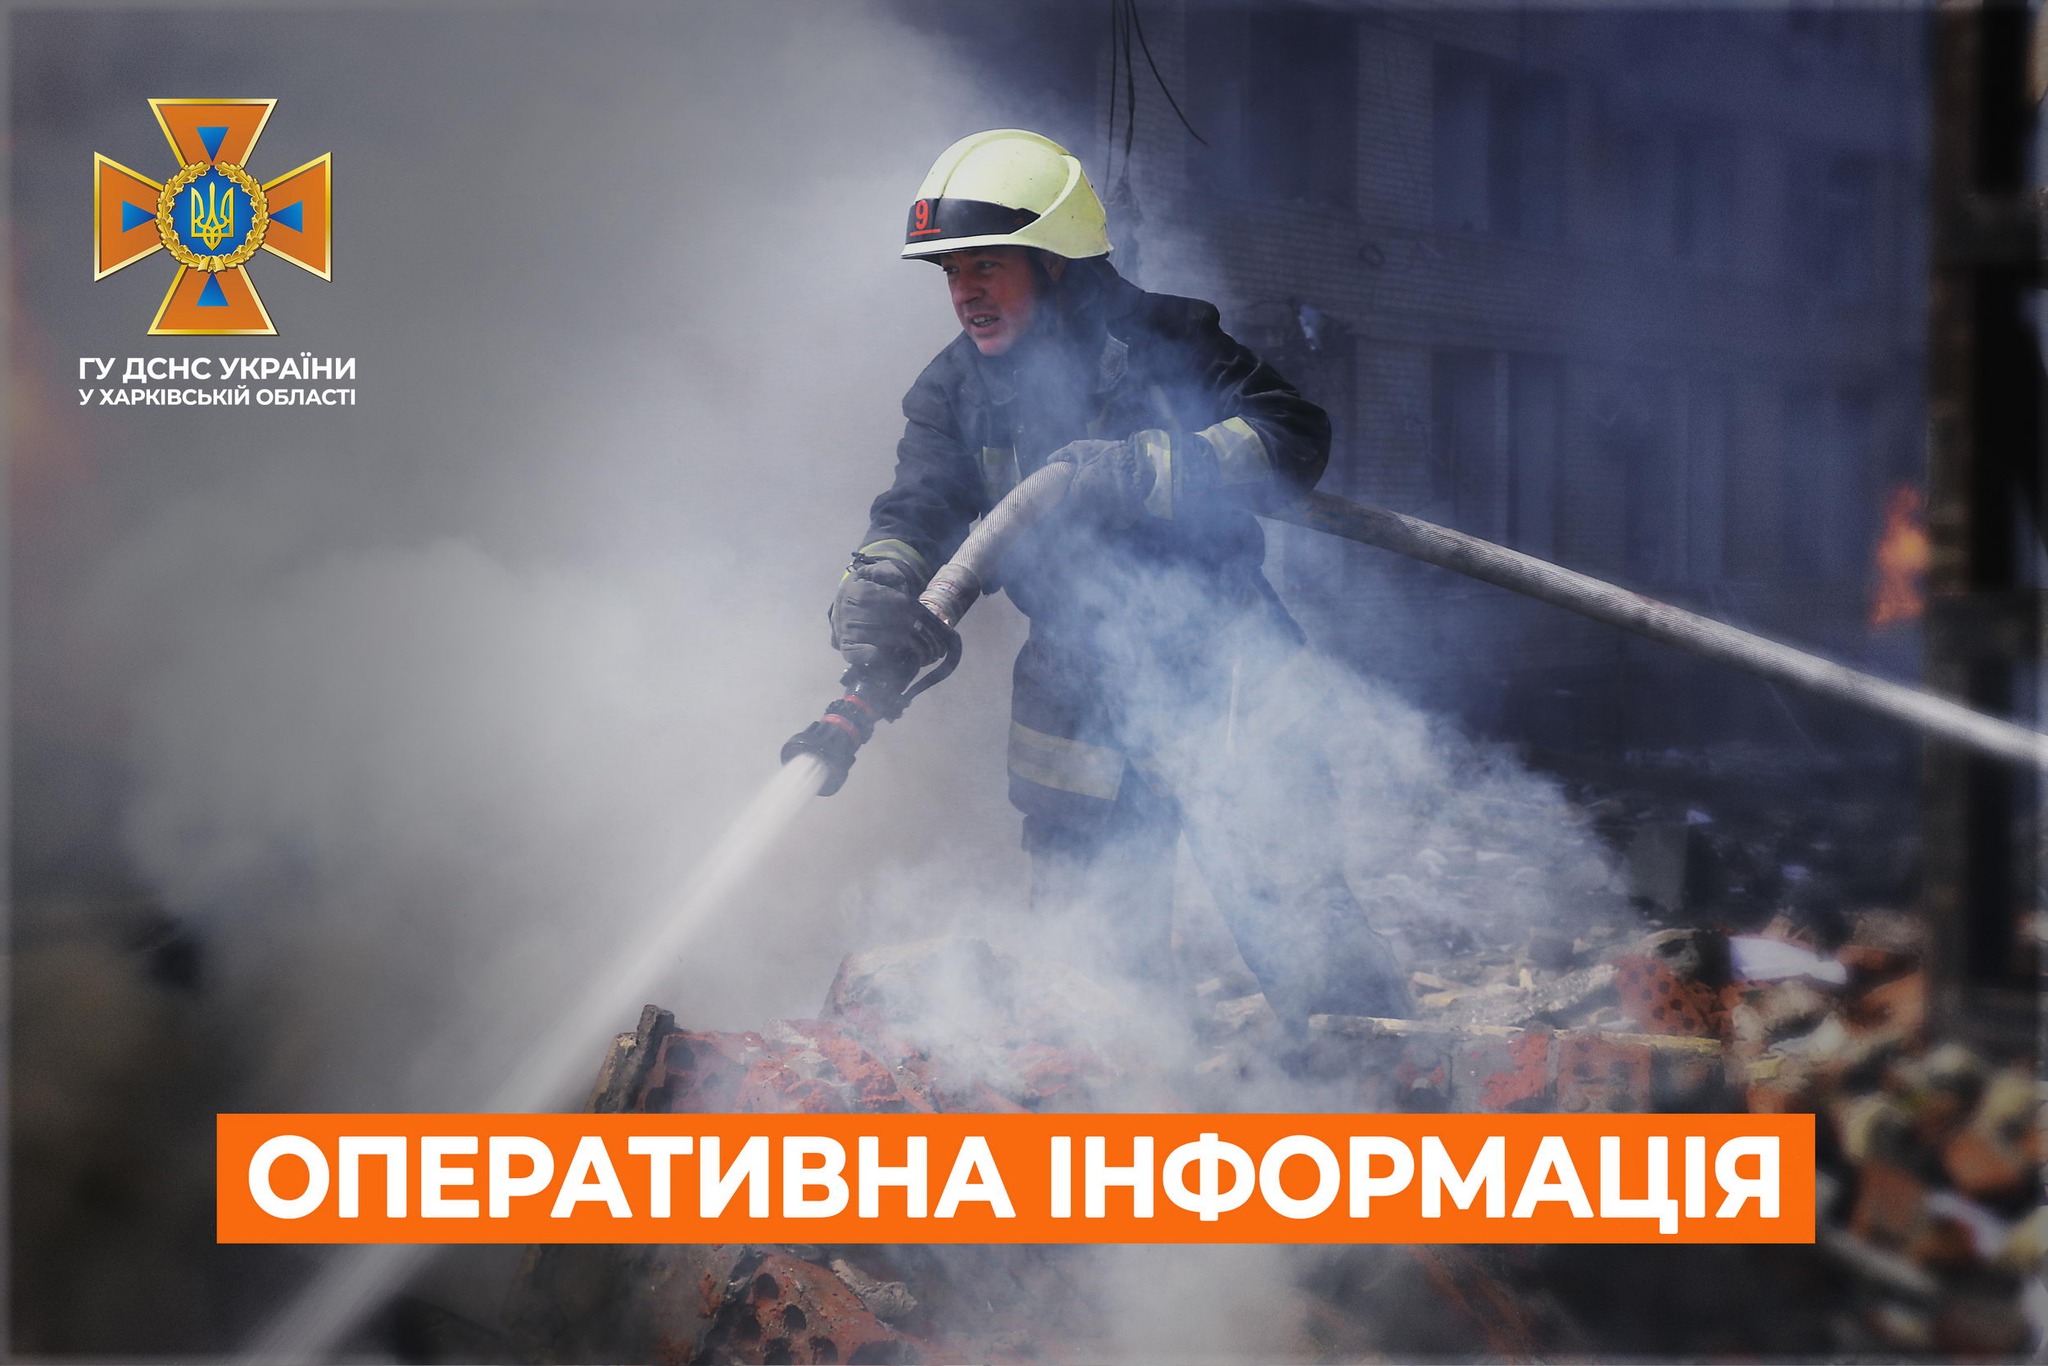 Двое мужчин погибли на пожарах в Харькове и области, еще двое пострадали